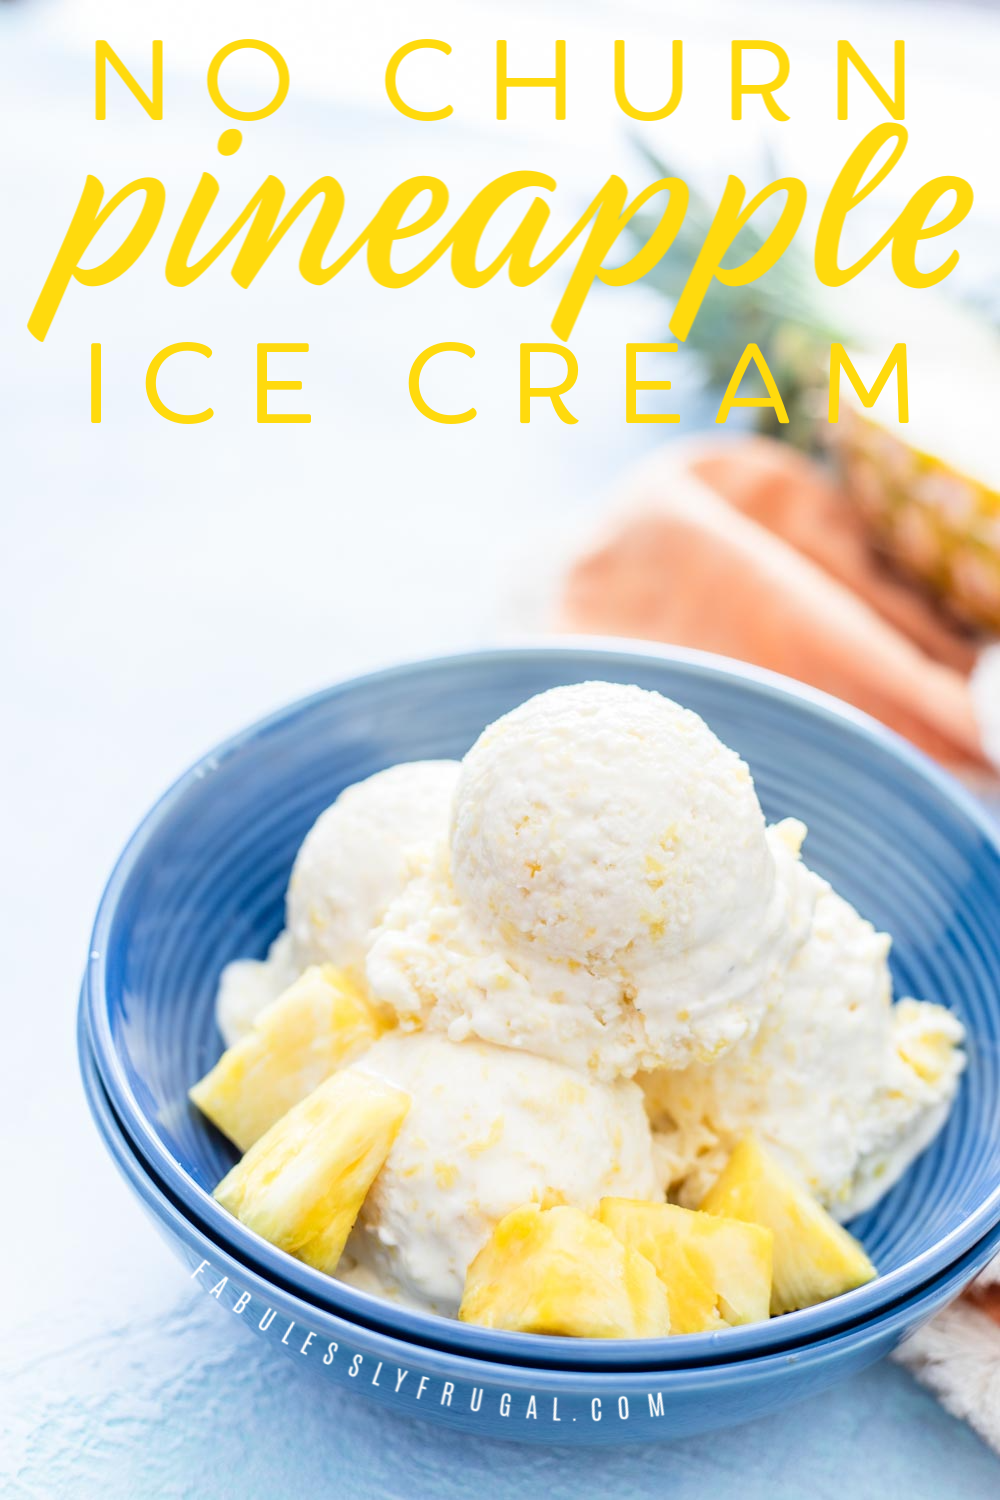 No-churn pineapple ice cream recipe